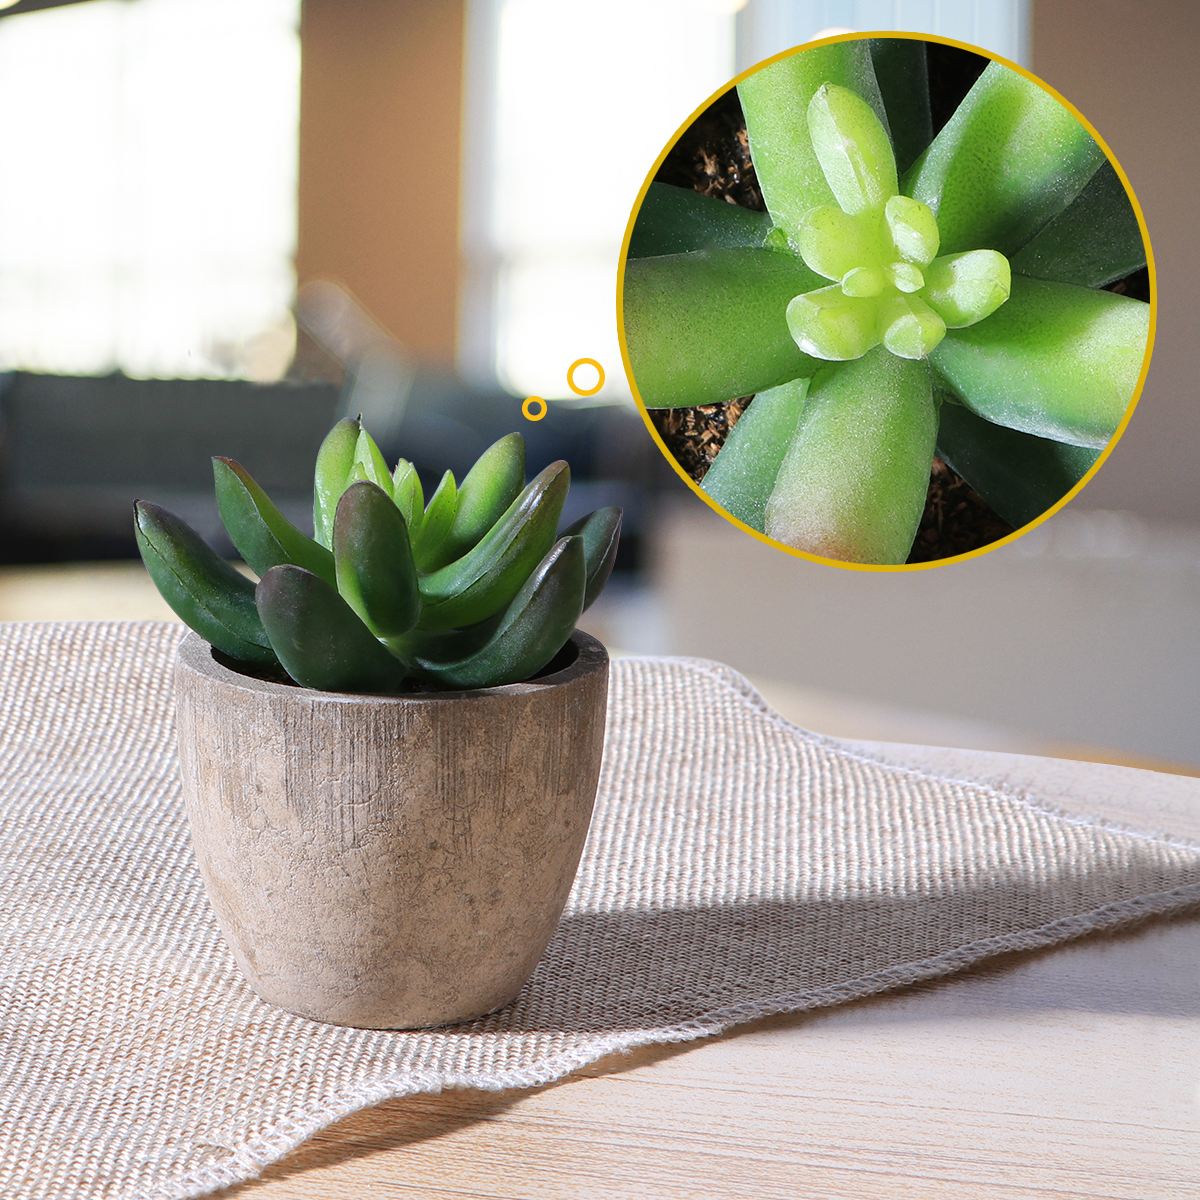 Artificial Succulent Plants Mini Artificial Pots freeshipping - Mandala Bloom